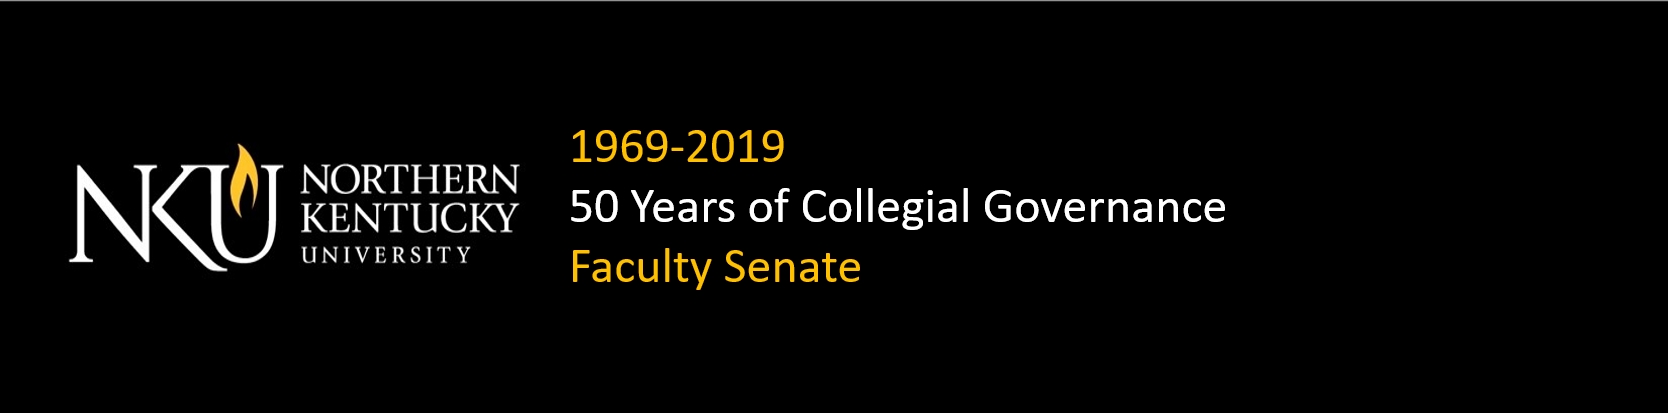 50 Years of NKU Faculty Senate